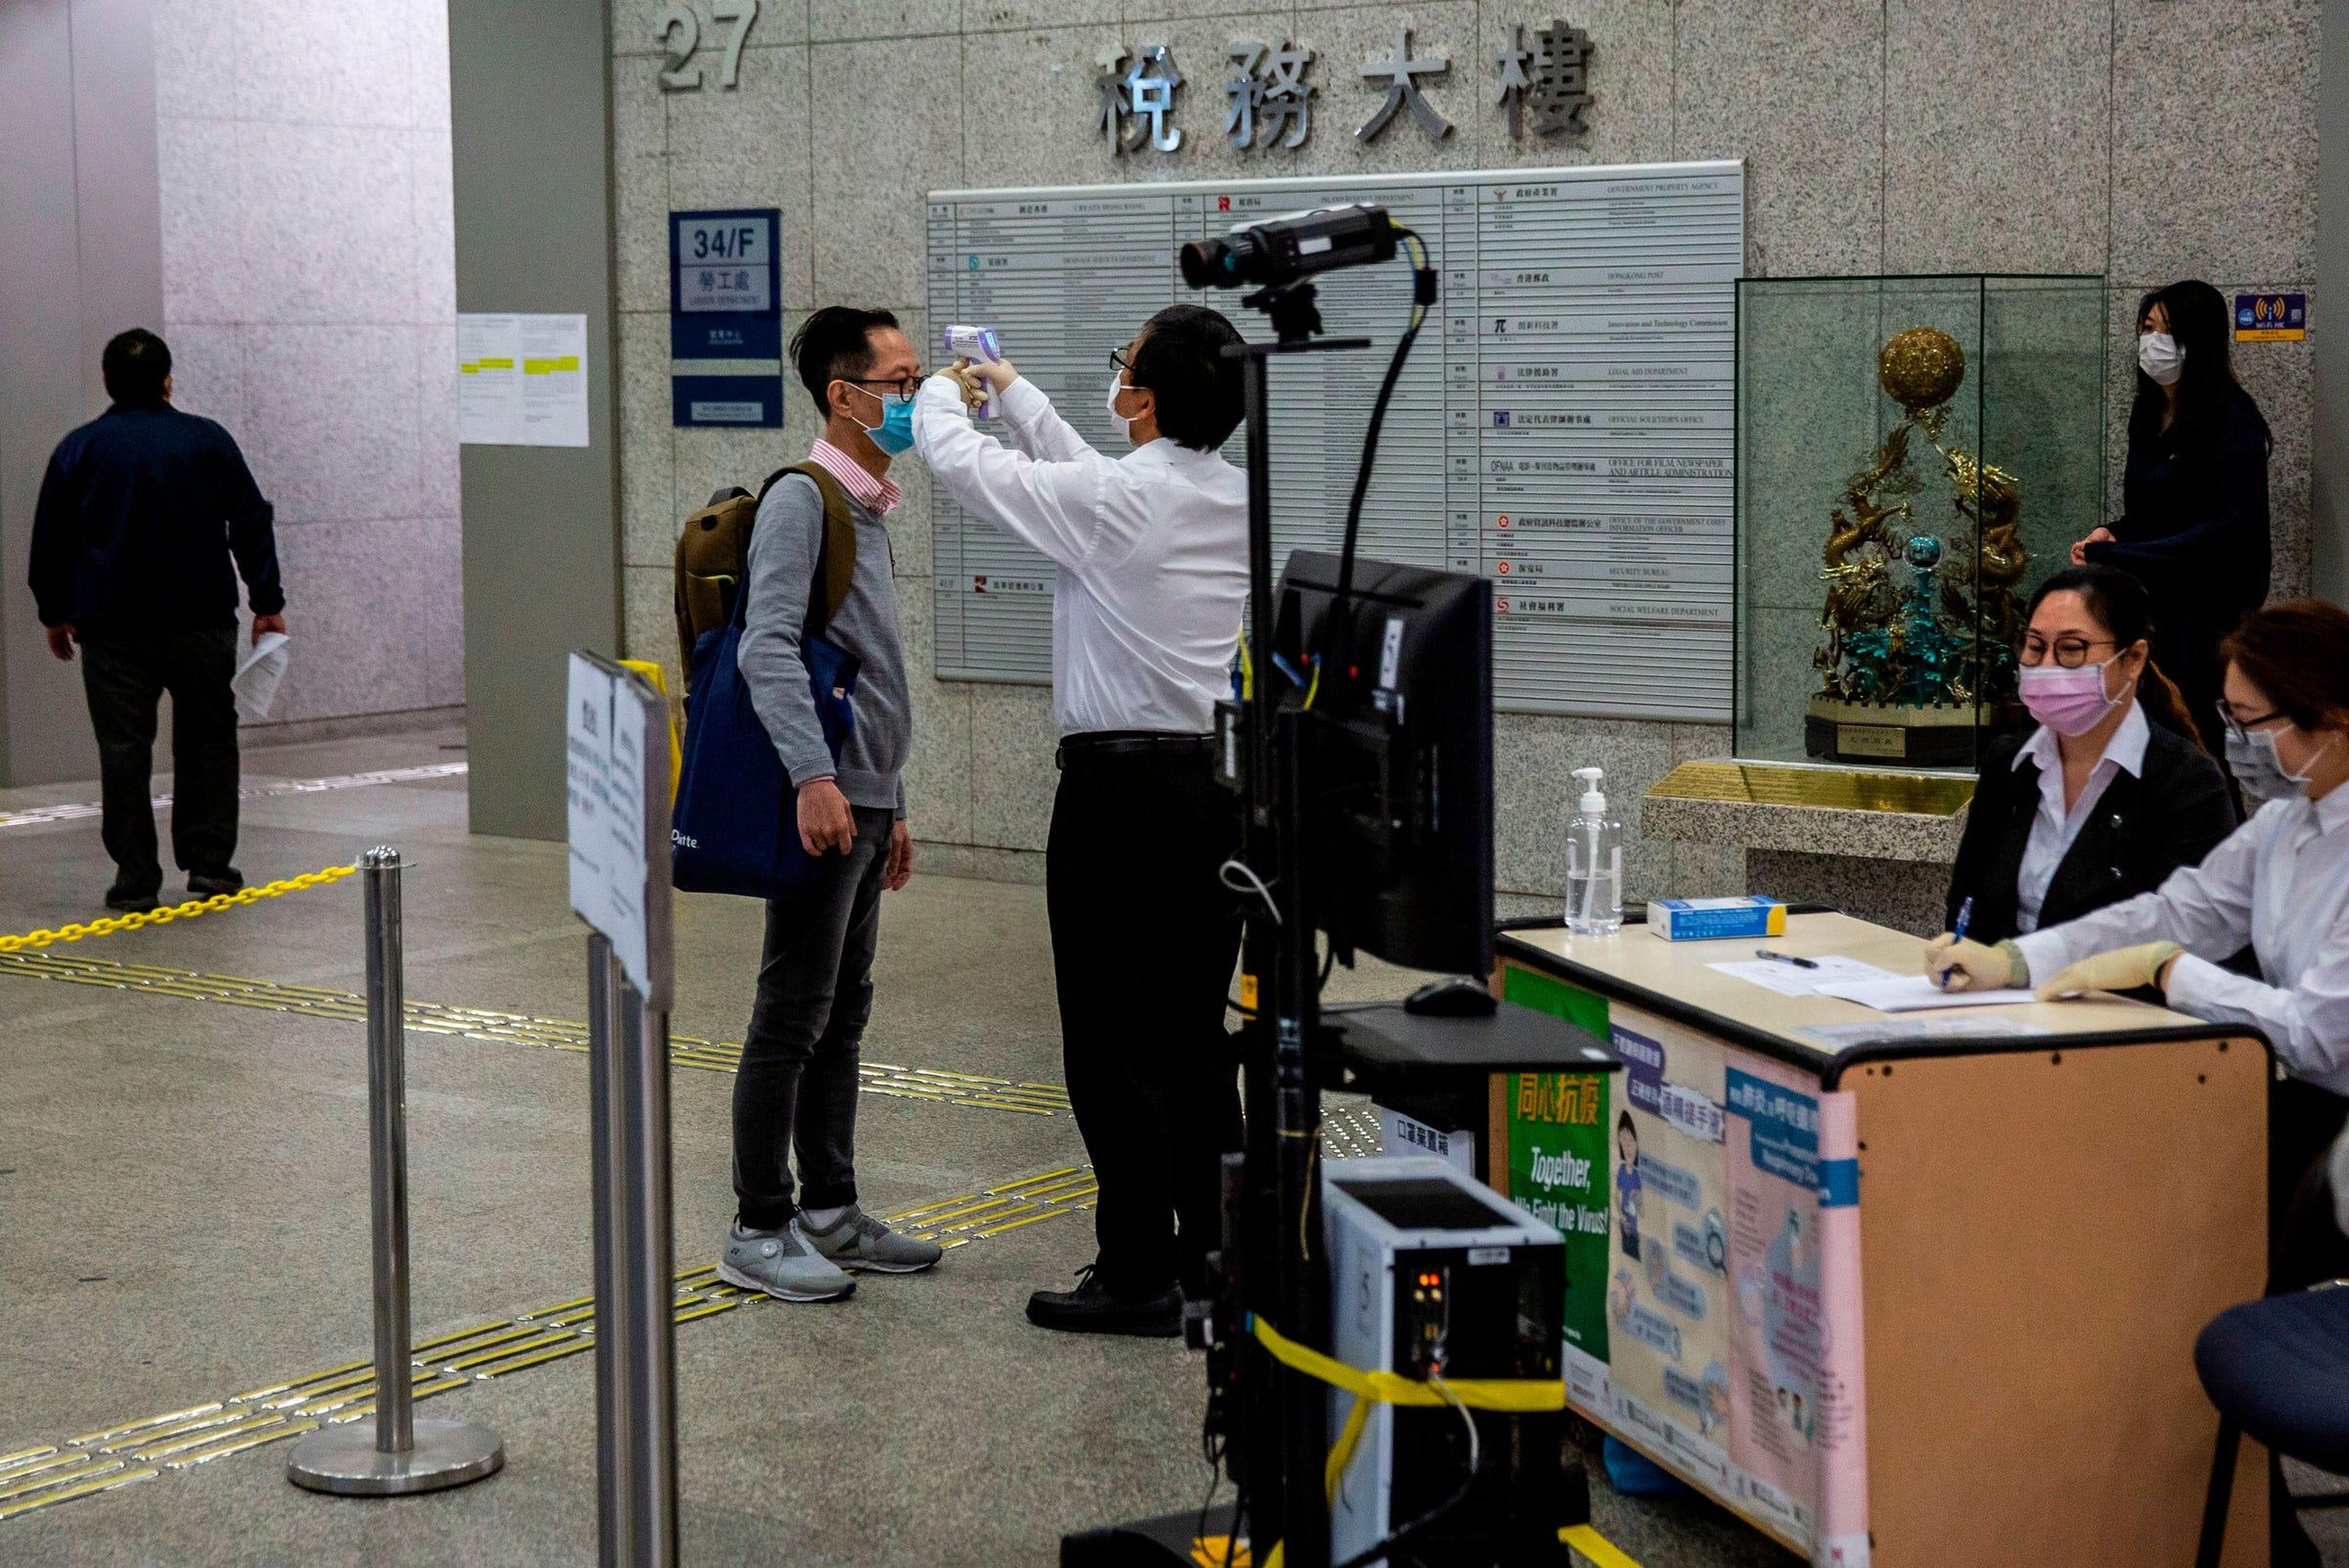 Se controla la temperatura de un hombre antes de ingresar a un edificio de oficinas gubernamentales en Hong Kong el 2 de marzo de 2020